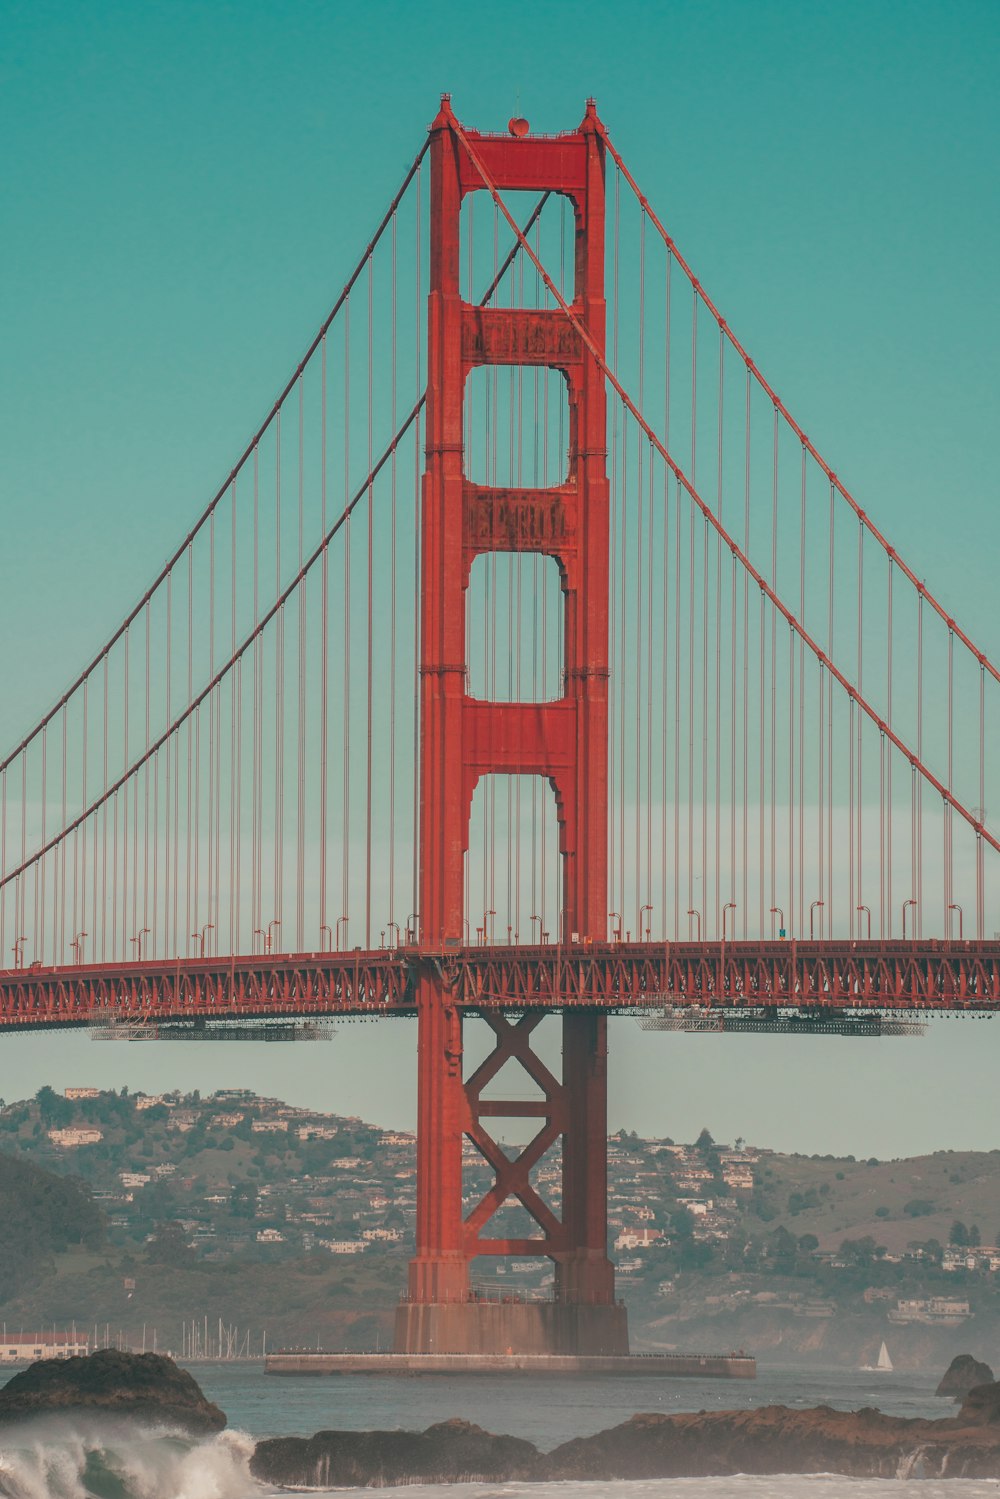 El puente Golden Gate en San Francisco, California